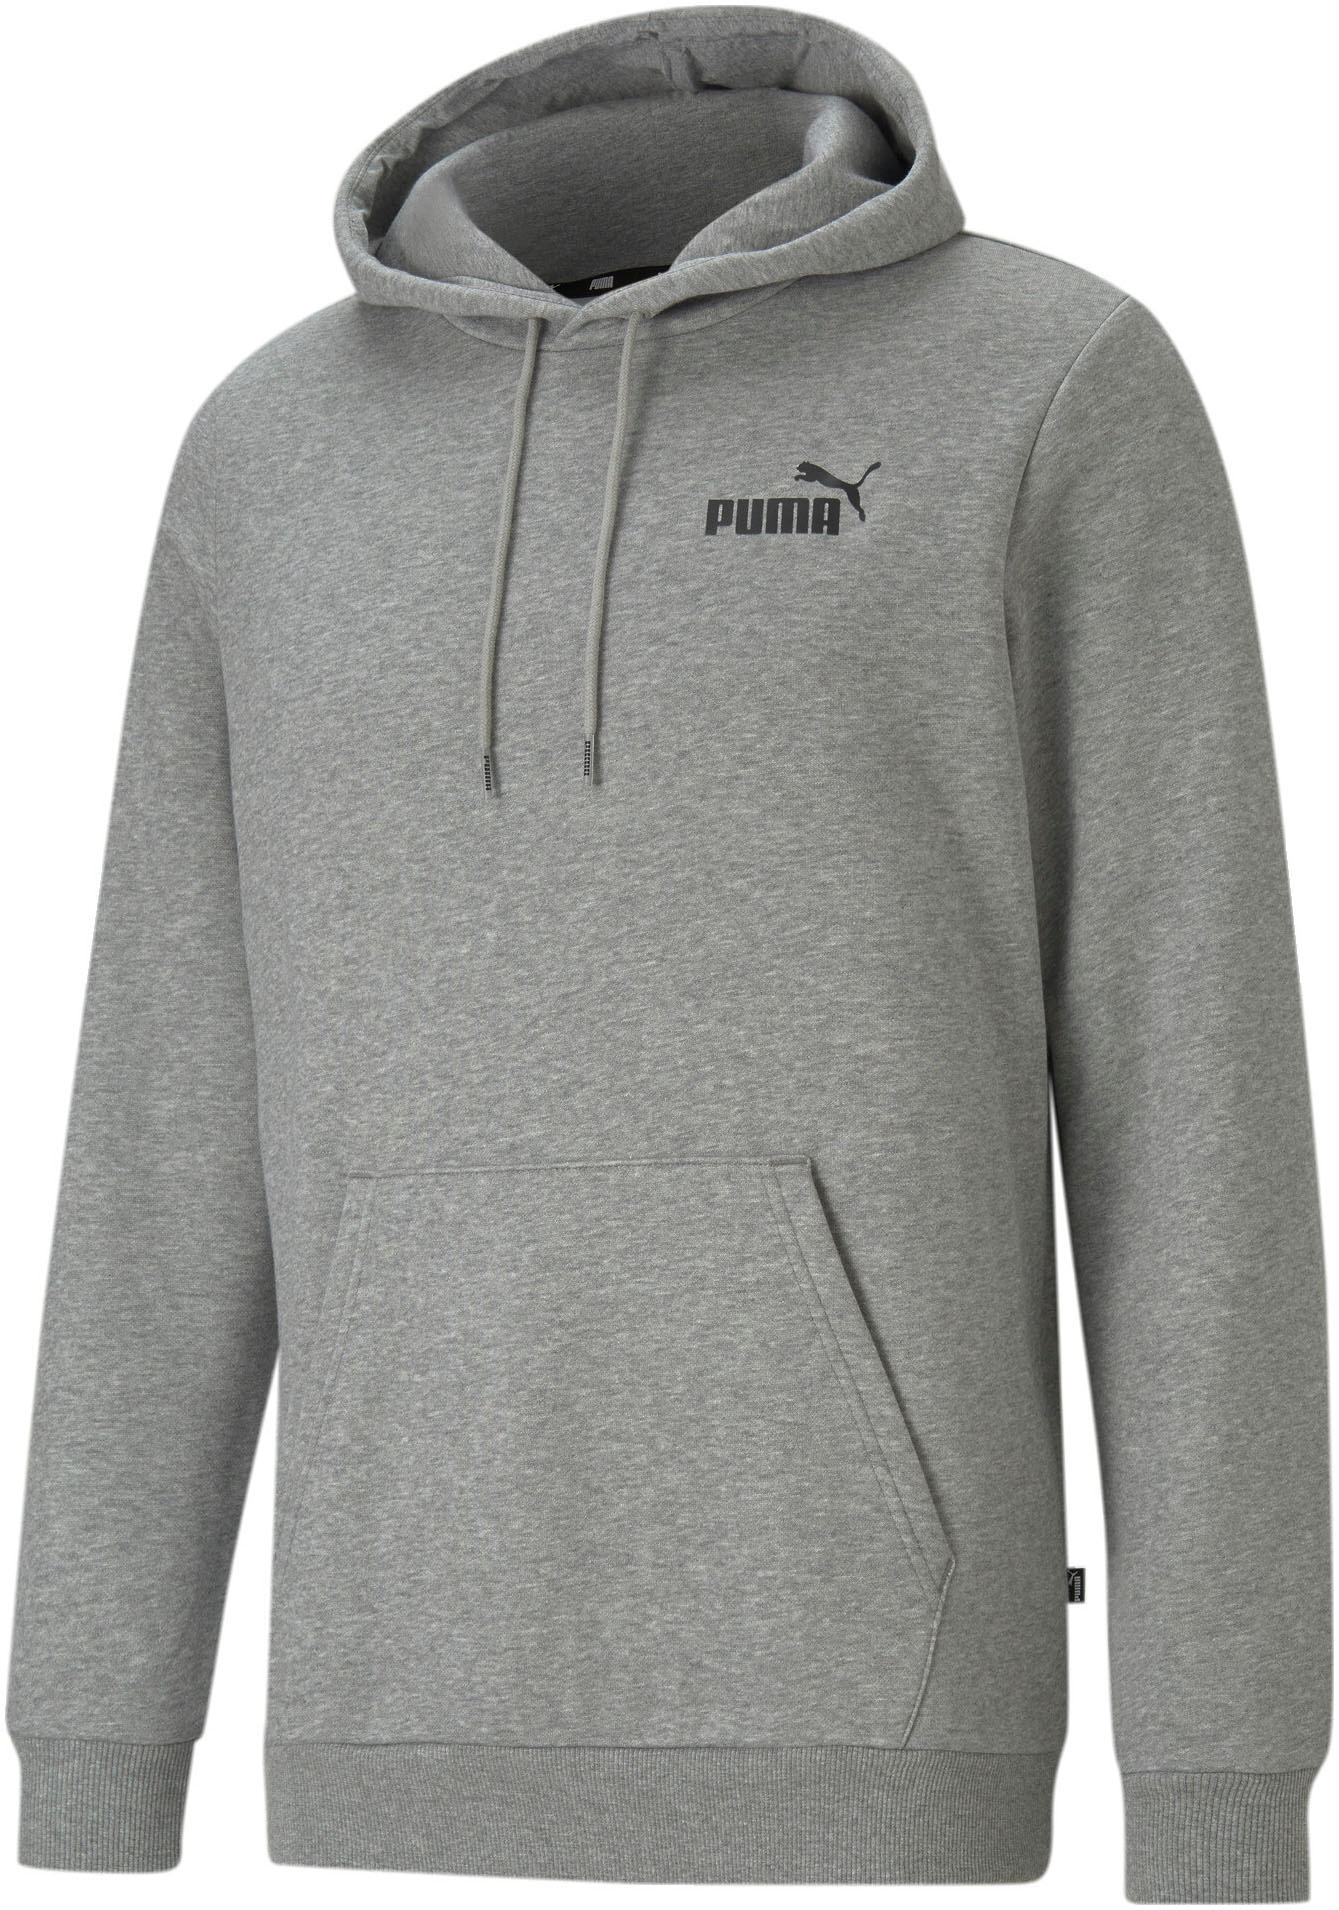 ♕ Puma Herrensweatshirts & -jacken jetzt versandkostenfrei bei Ackermann  Schweiz kaufen